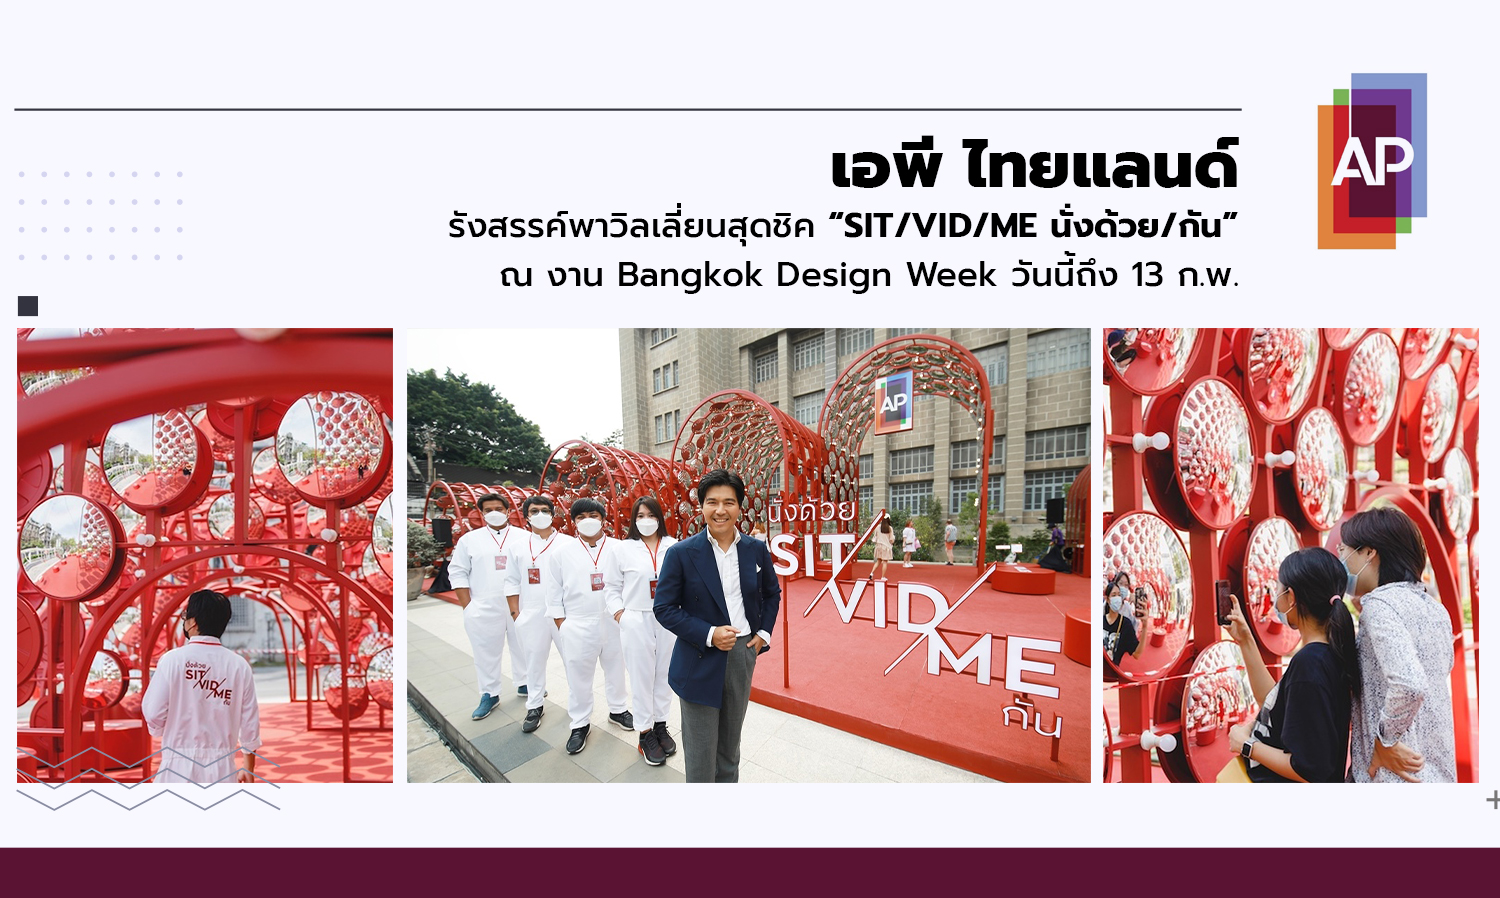 เอพี ไทยแลนด์ รังสรรค์พาวิลเลี่ยนสุดชิค “SIT/VID/ME นั่งด้วย/กัน” ณ งาน Bangkok Design Week วันนี้ถึง 13 ก.พ.